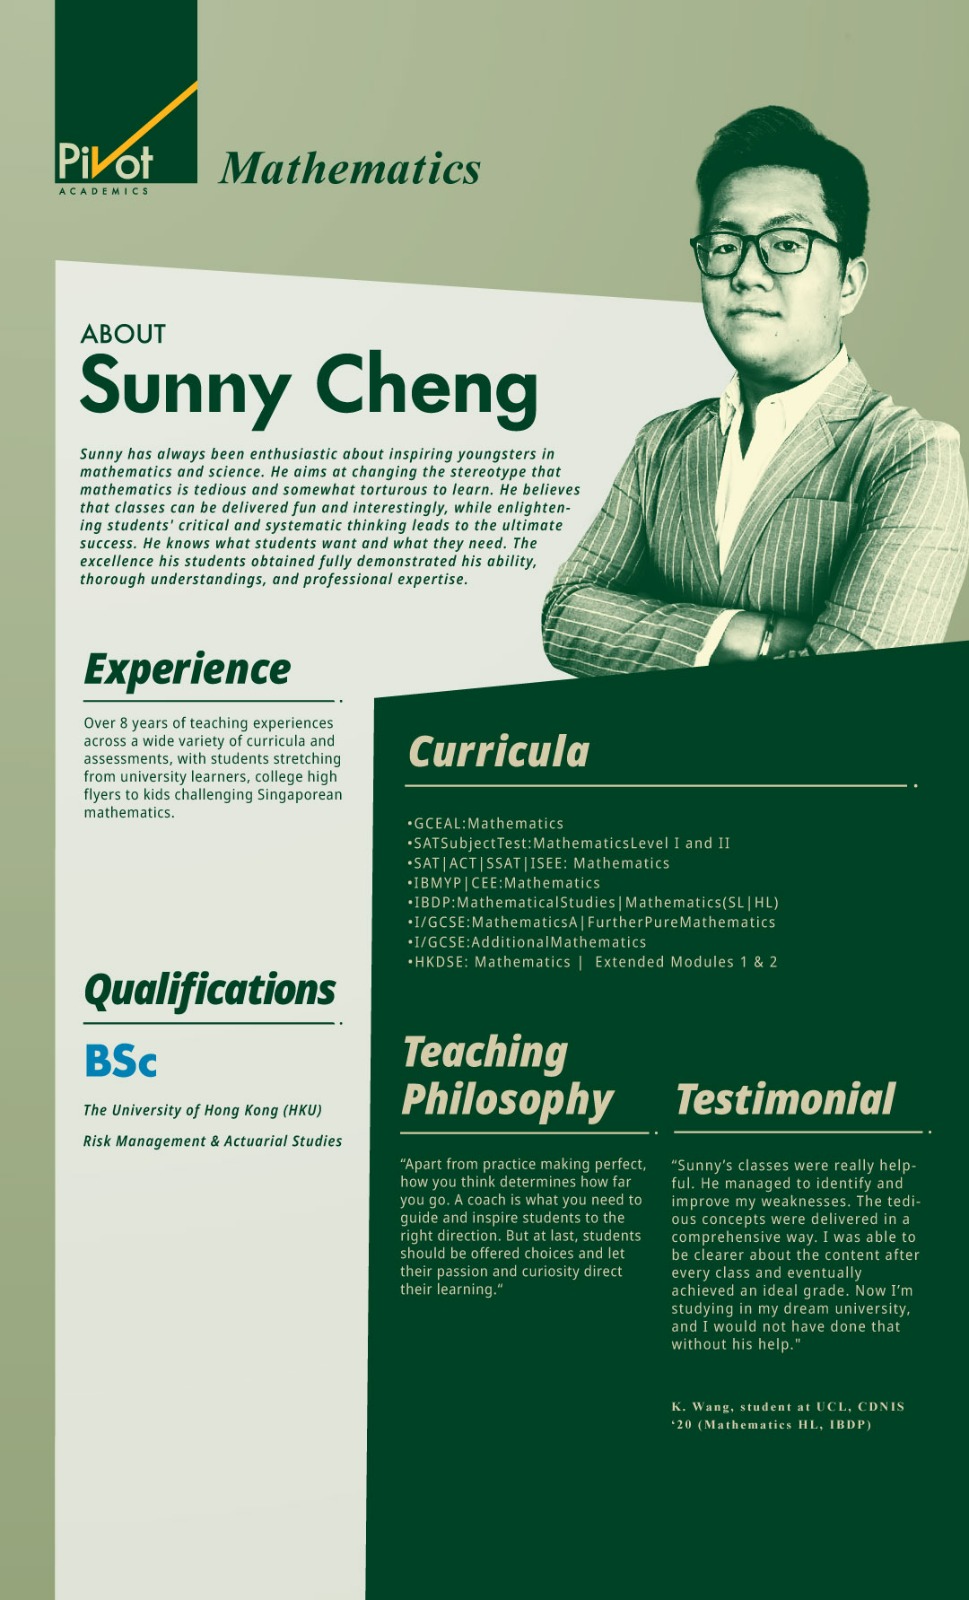 Sunny cheung